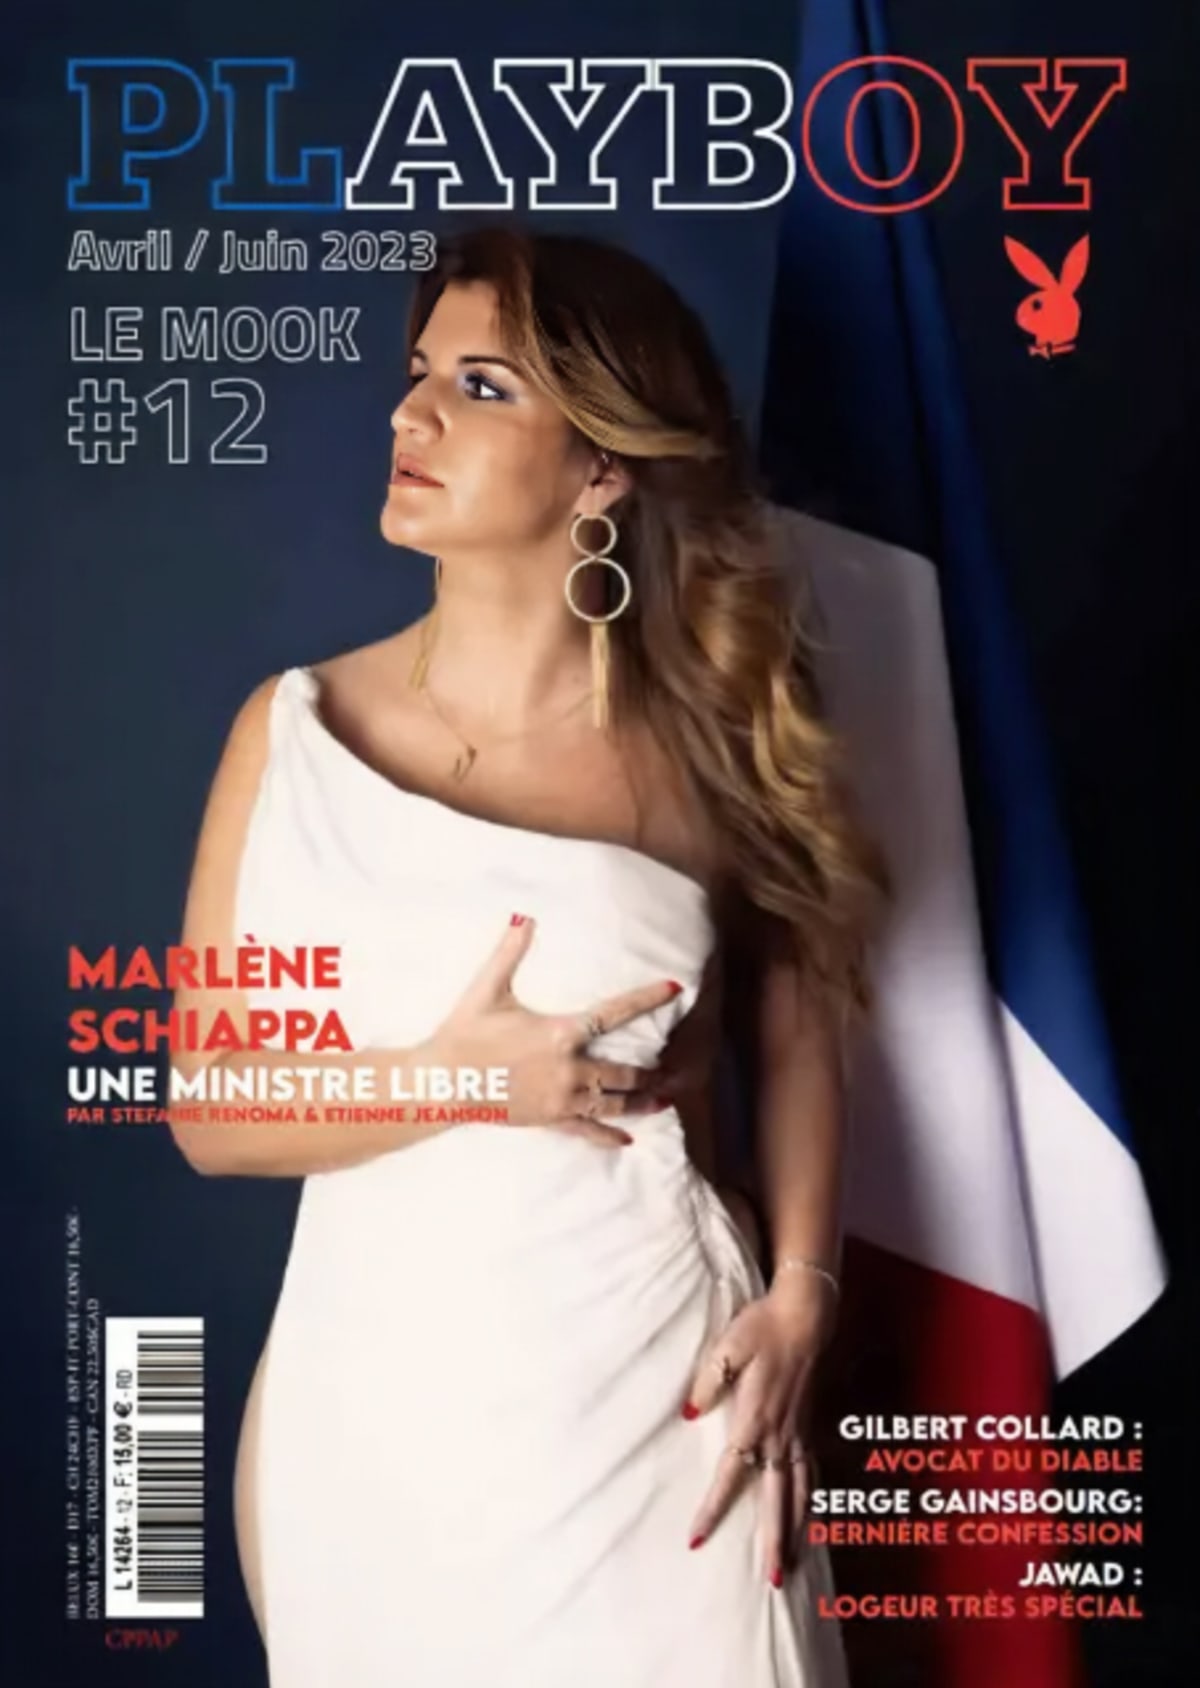 Kritici především z řad opozičních politiků žijí v představě, že v době, kdy země zažívá politickou krizi kvůli důchodům, jsou snímky pro Playboy nevhodné. Nicméně demonstrujícím Francouzům nejspíš vadí úplně jiné věci...